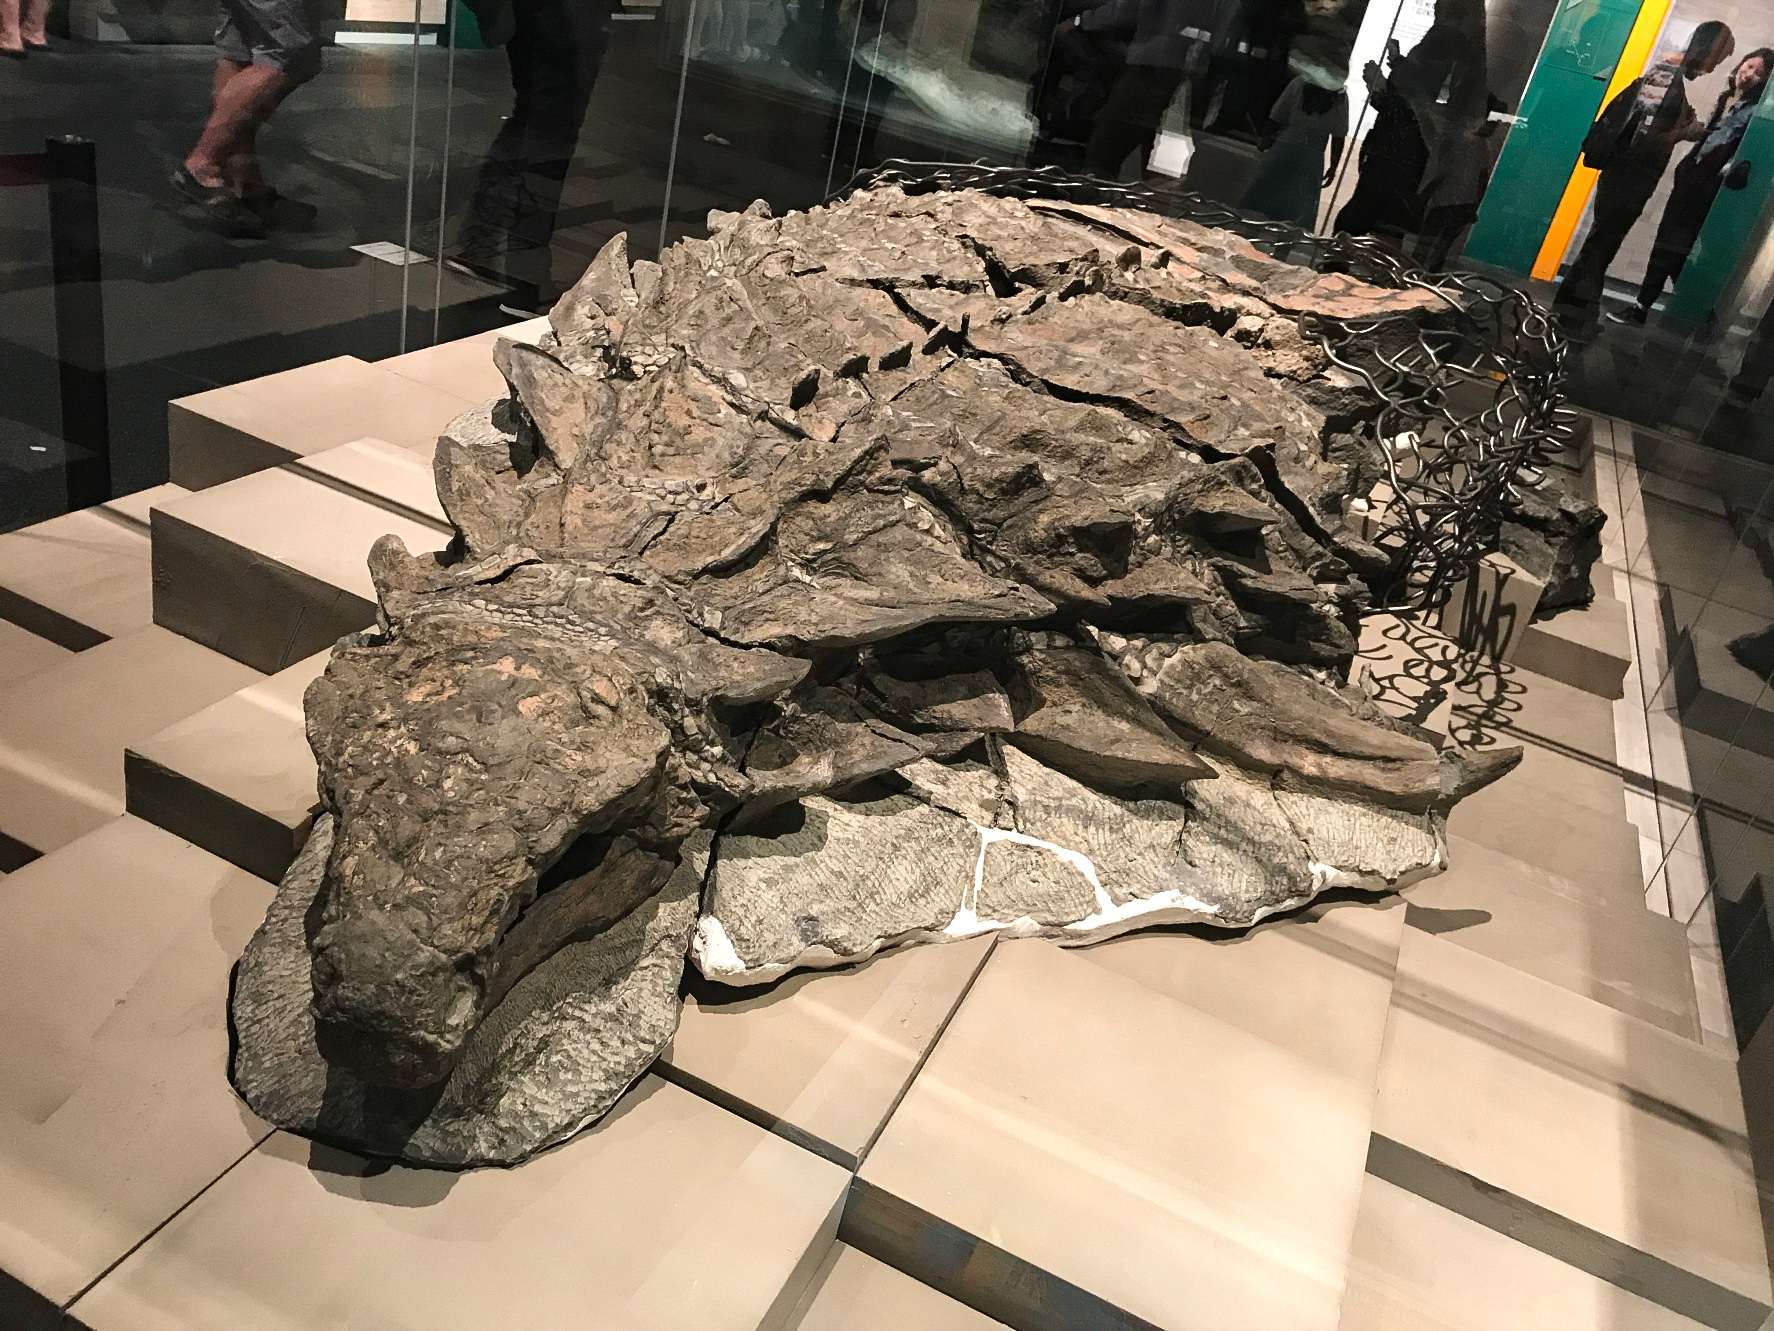 Borealopelta (что означает «Северный щит») — род нодозавровых анкилозавров из раннего мелового периода Альберты, Канада. Он содержит единственный вид, B. markmitchelli, названный в 2017 году Калебом Брауном и его коллегами по хорошо сохранившемуся экземпляру, известному как нодозавр Suncor.